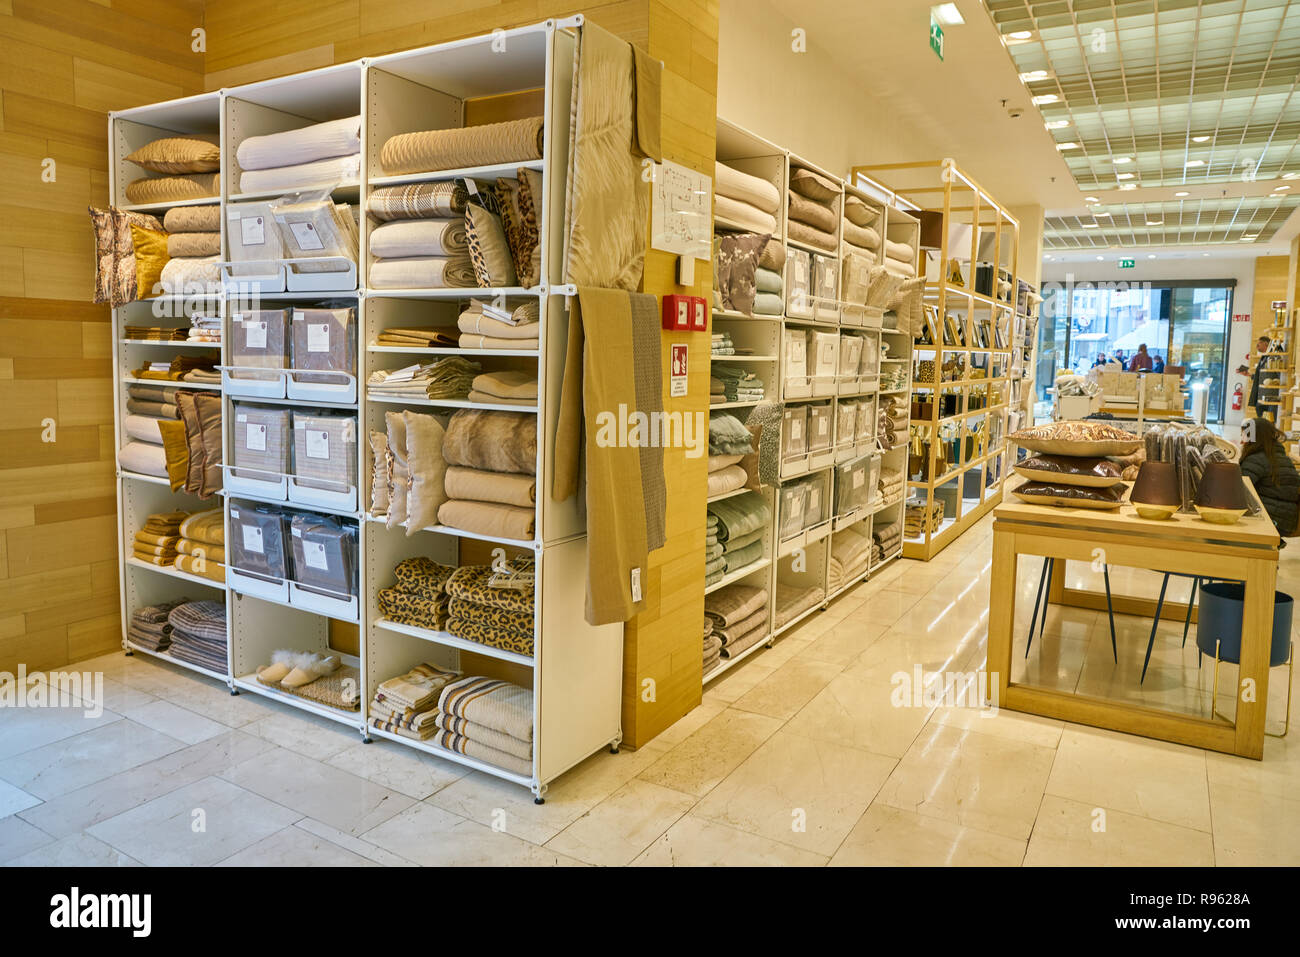 Zara home shop business immagini e fotografie stock ad alta risoluzione -  Alamy